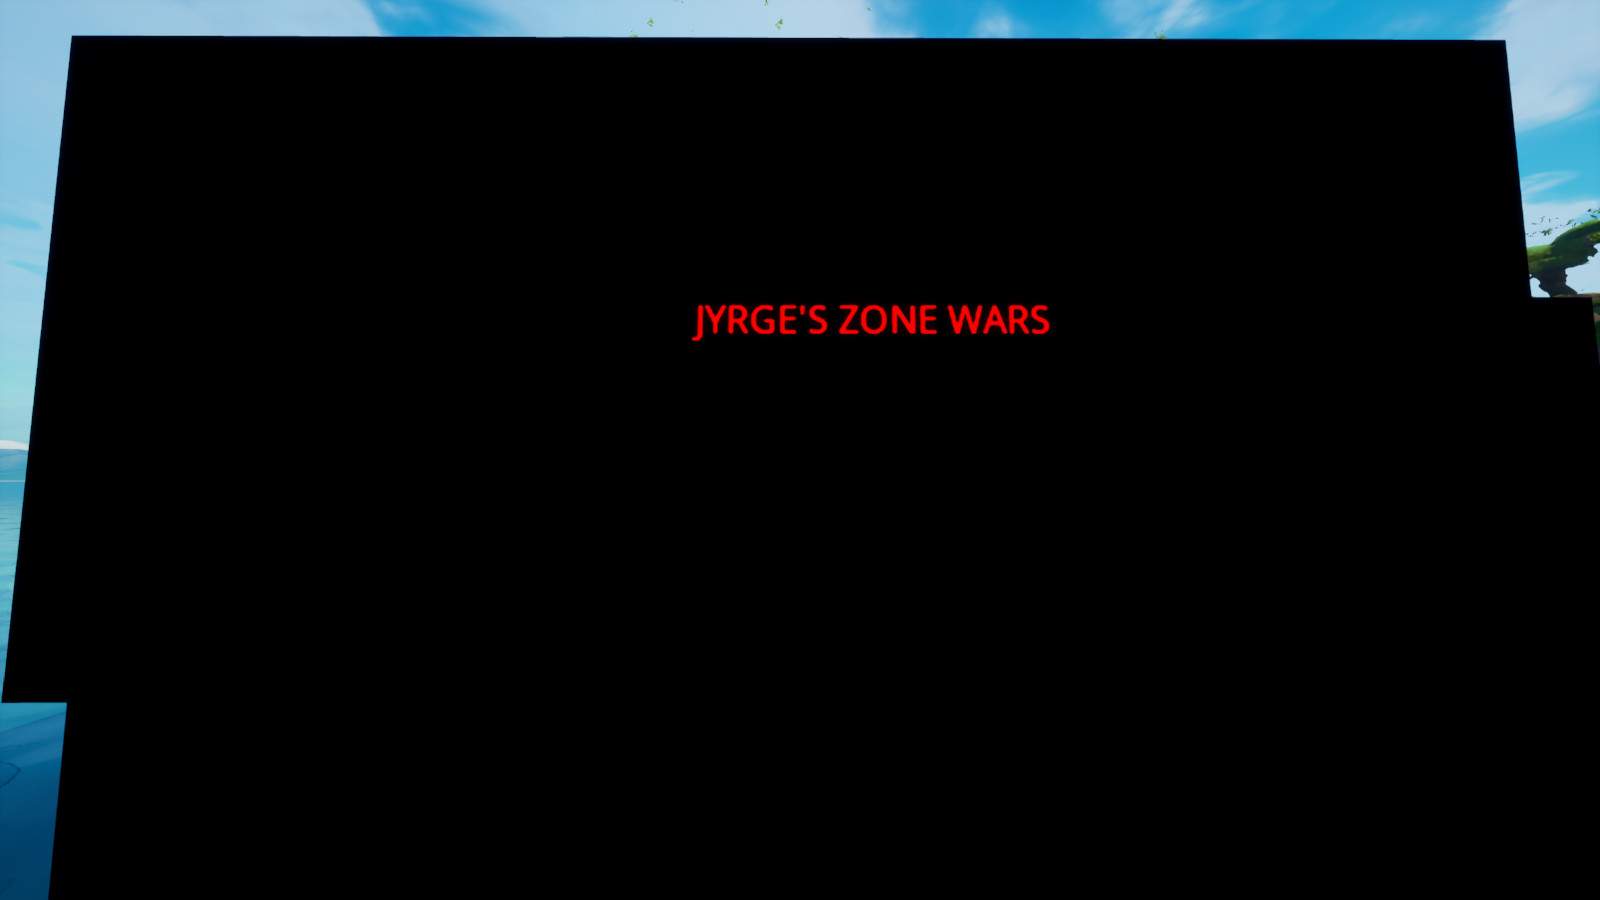 JYRGE'S ZONE WARS